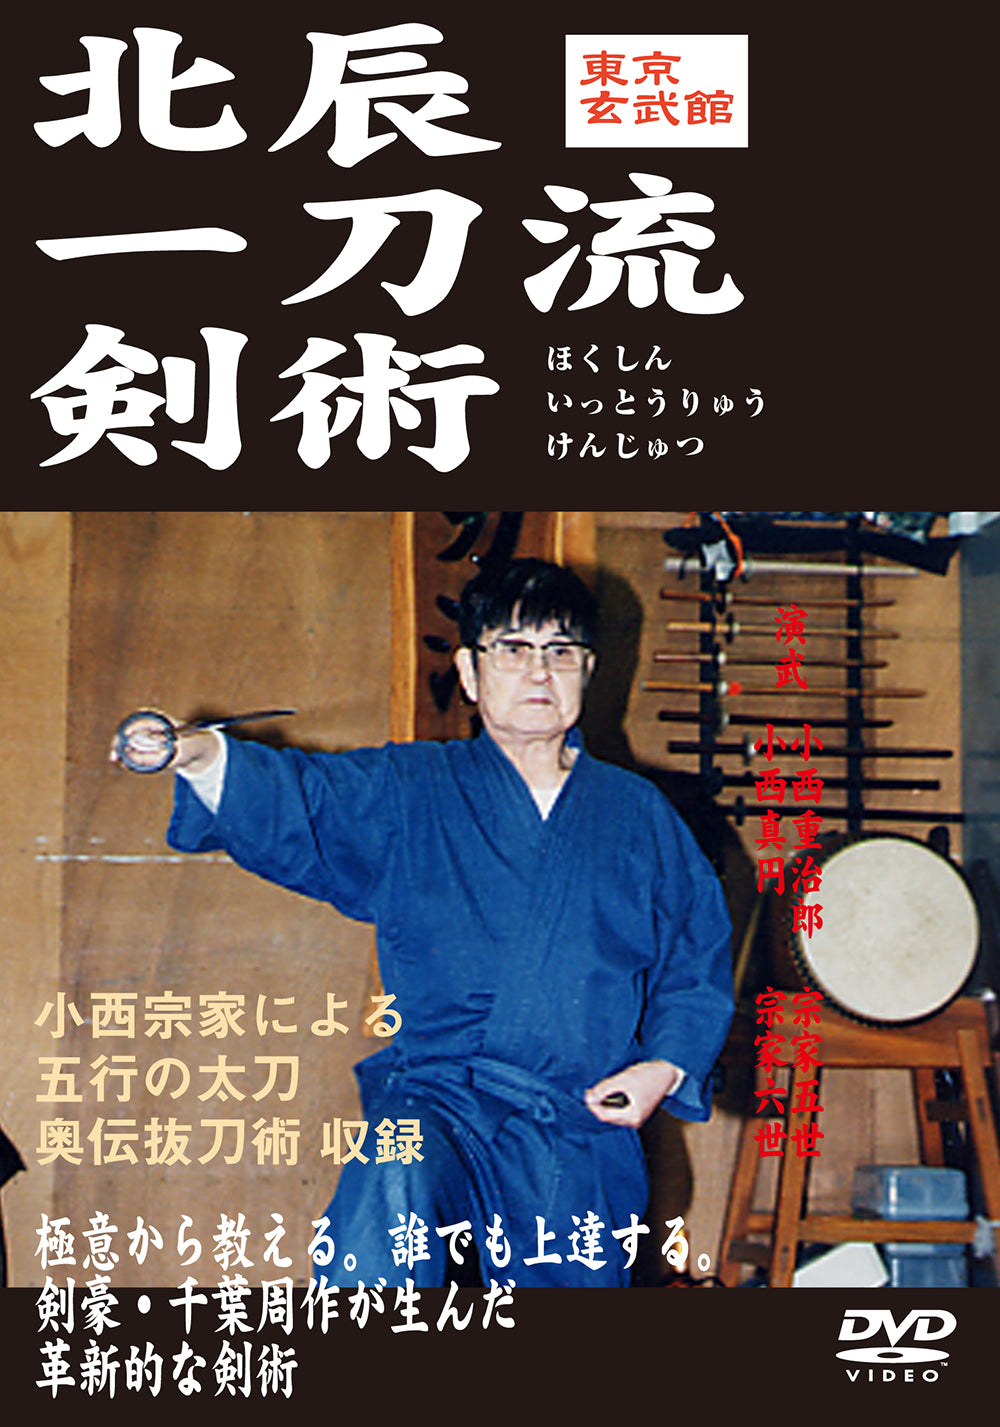 Hokushin Itto Ryu Kenjutsu Genbukan Vol 1 DVD de Shigejiro Konishi